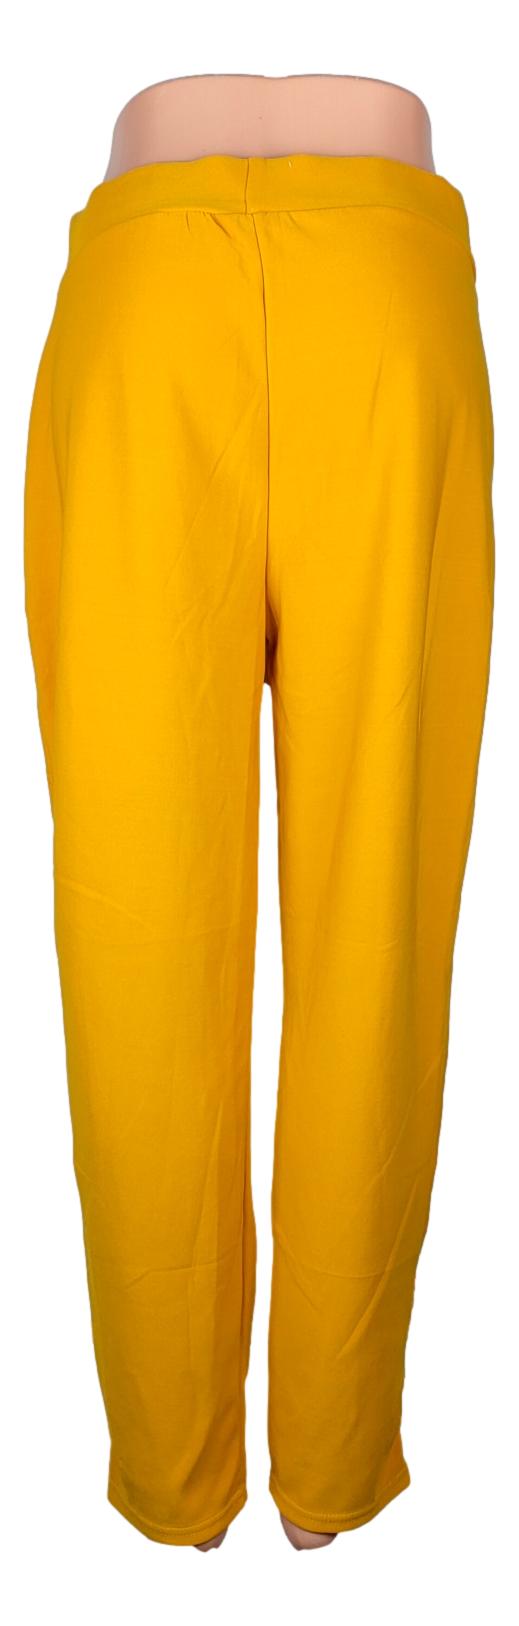 Pantalon Sans Marque -Taille 40